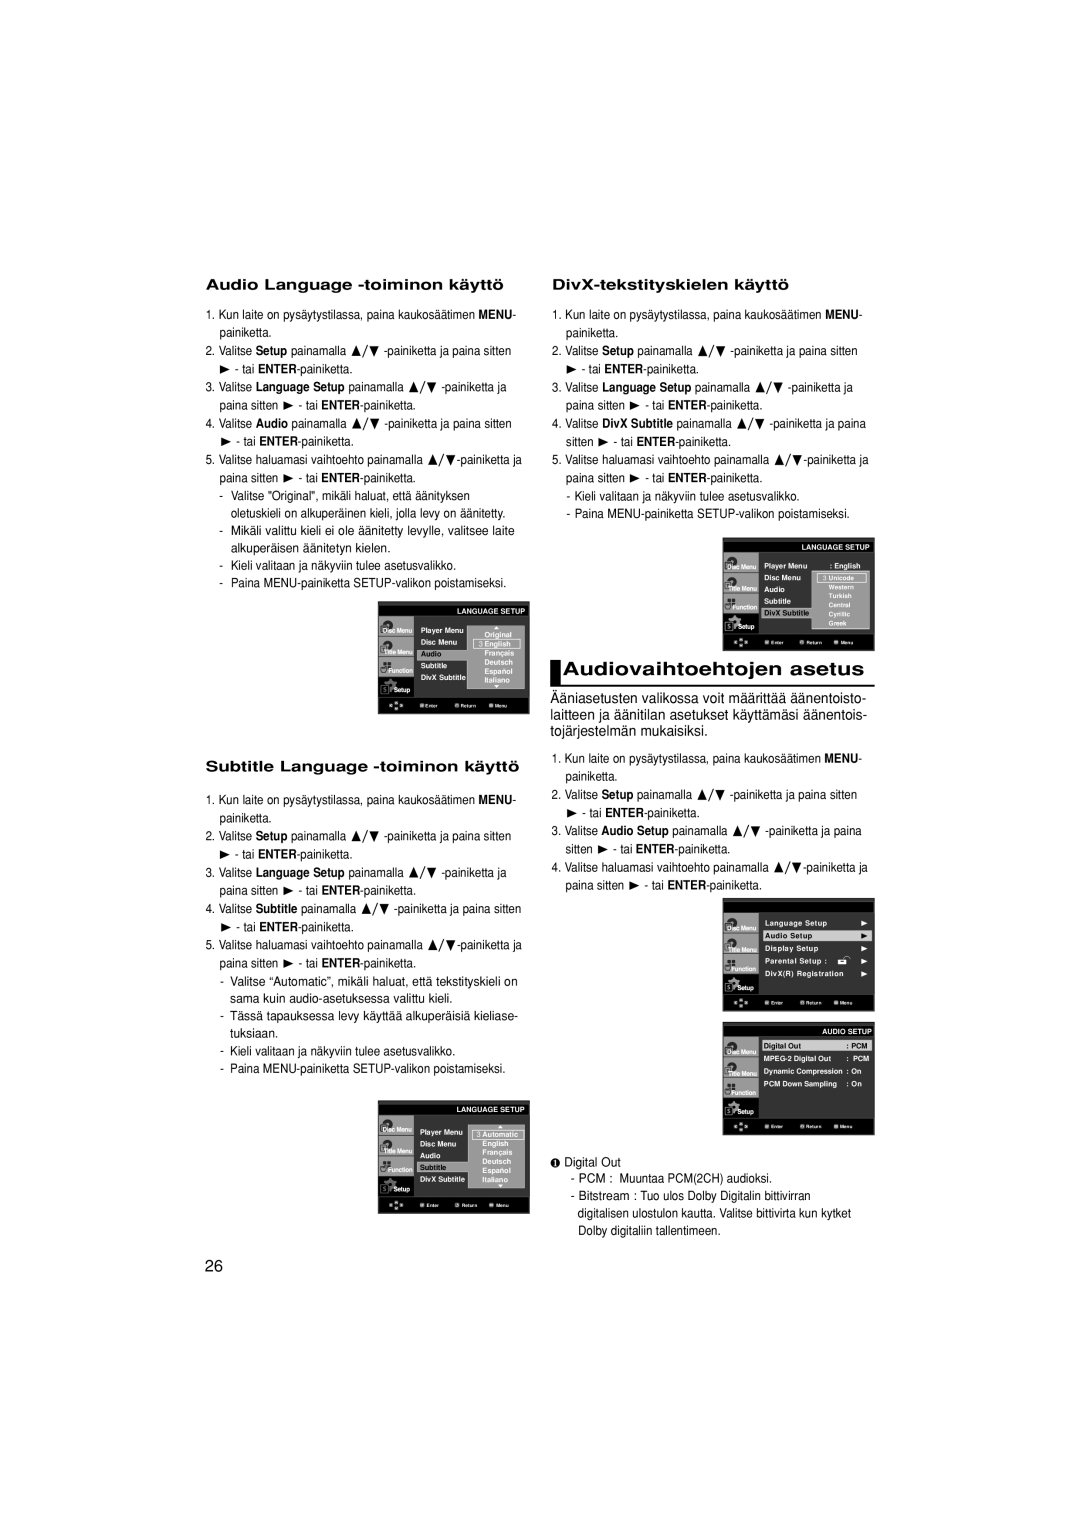 Samsung DVD-F1080W/XEE Audiovaihtoehtojen asetus, Audio Language -toiminon käyttö, Subtitle Language -toiminon käyttö 